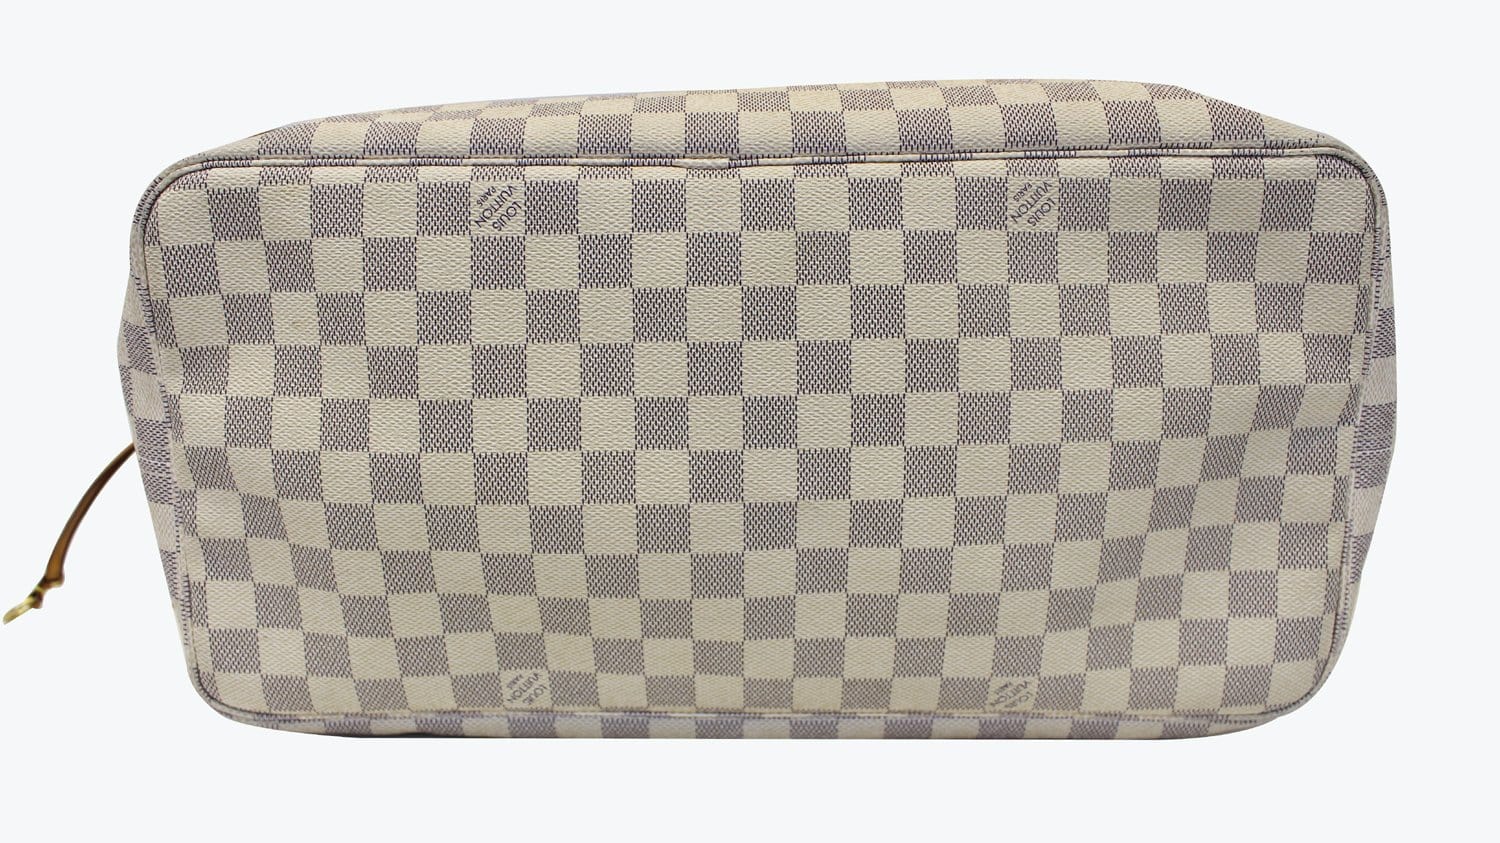 Neverfull GM Damier Azur – Keeks Designer Handbags